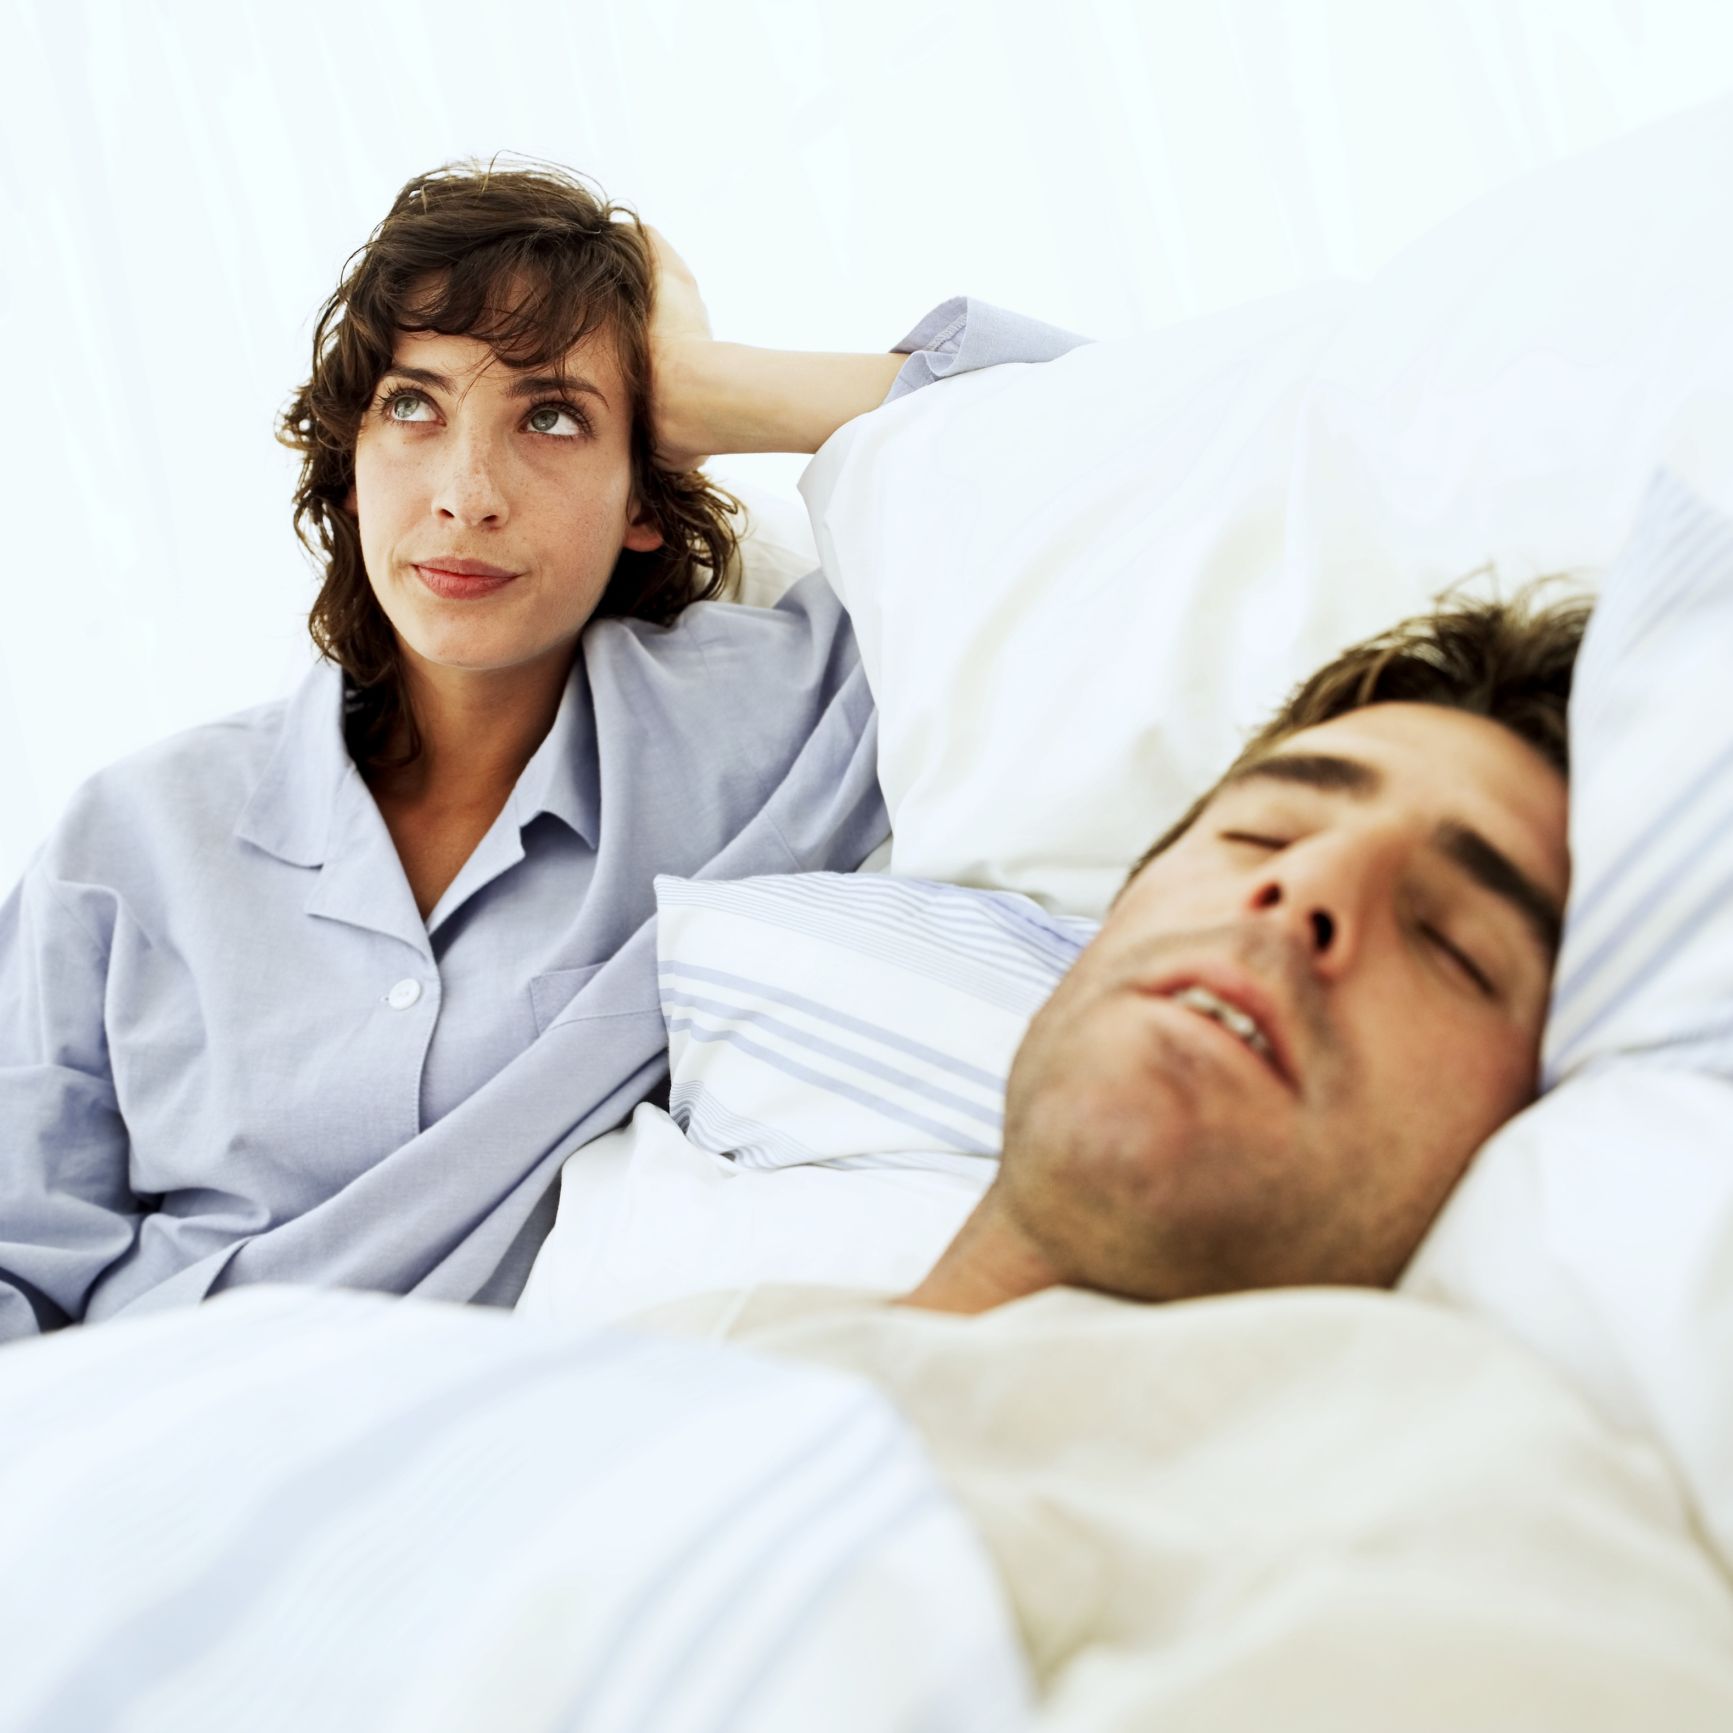 Sleeping Hand Job Sex - Men fall asleep, women cuddle and other post-sex behaviors that affect  relationships | CNN